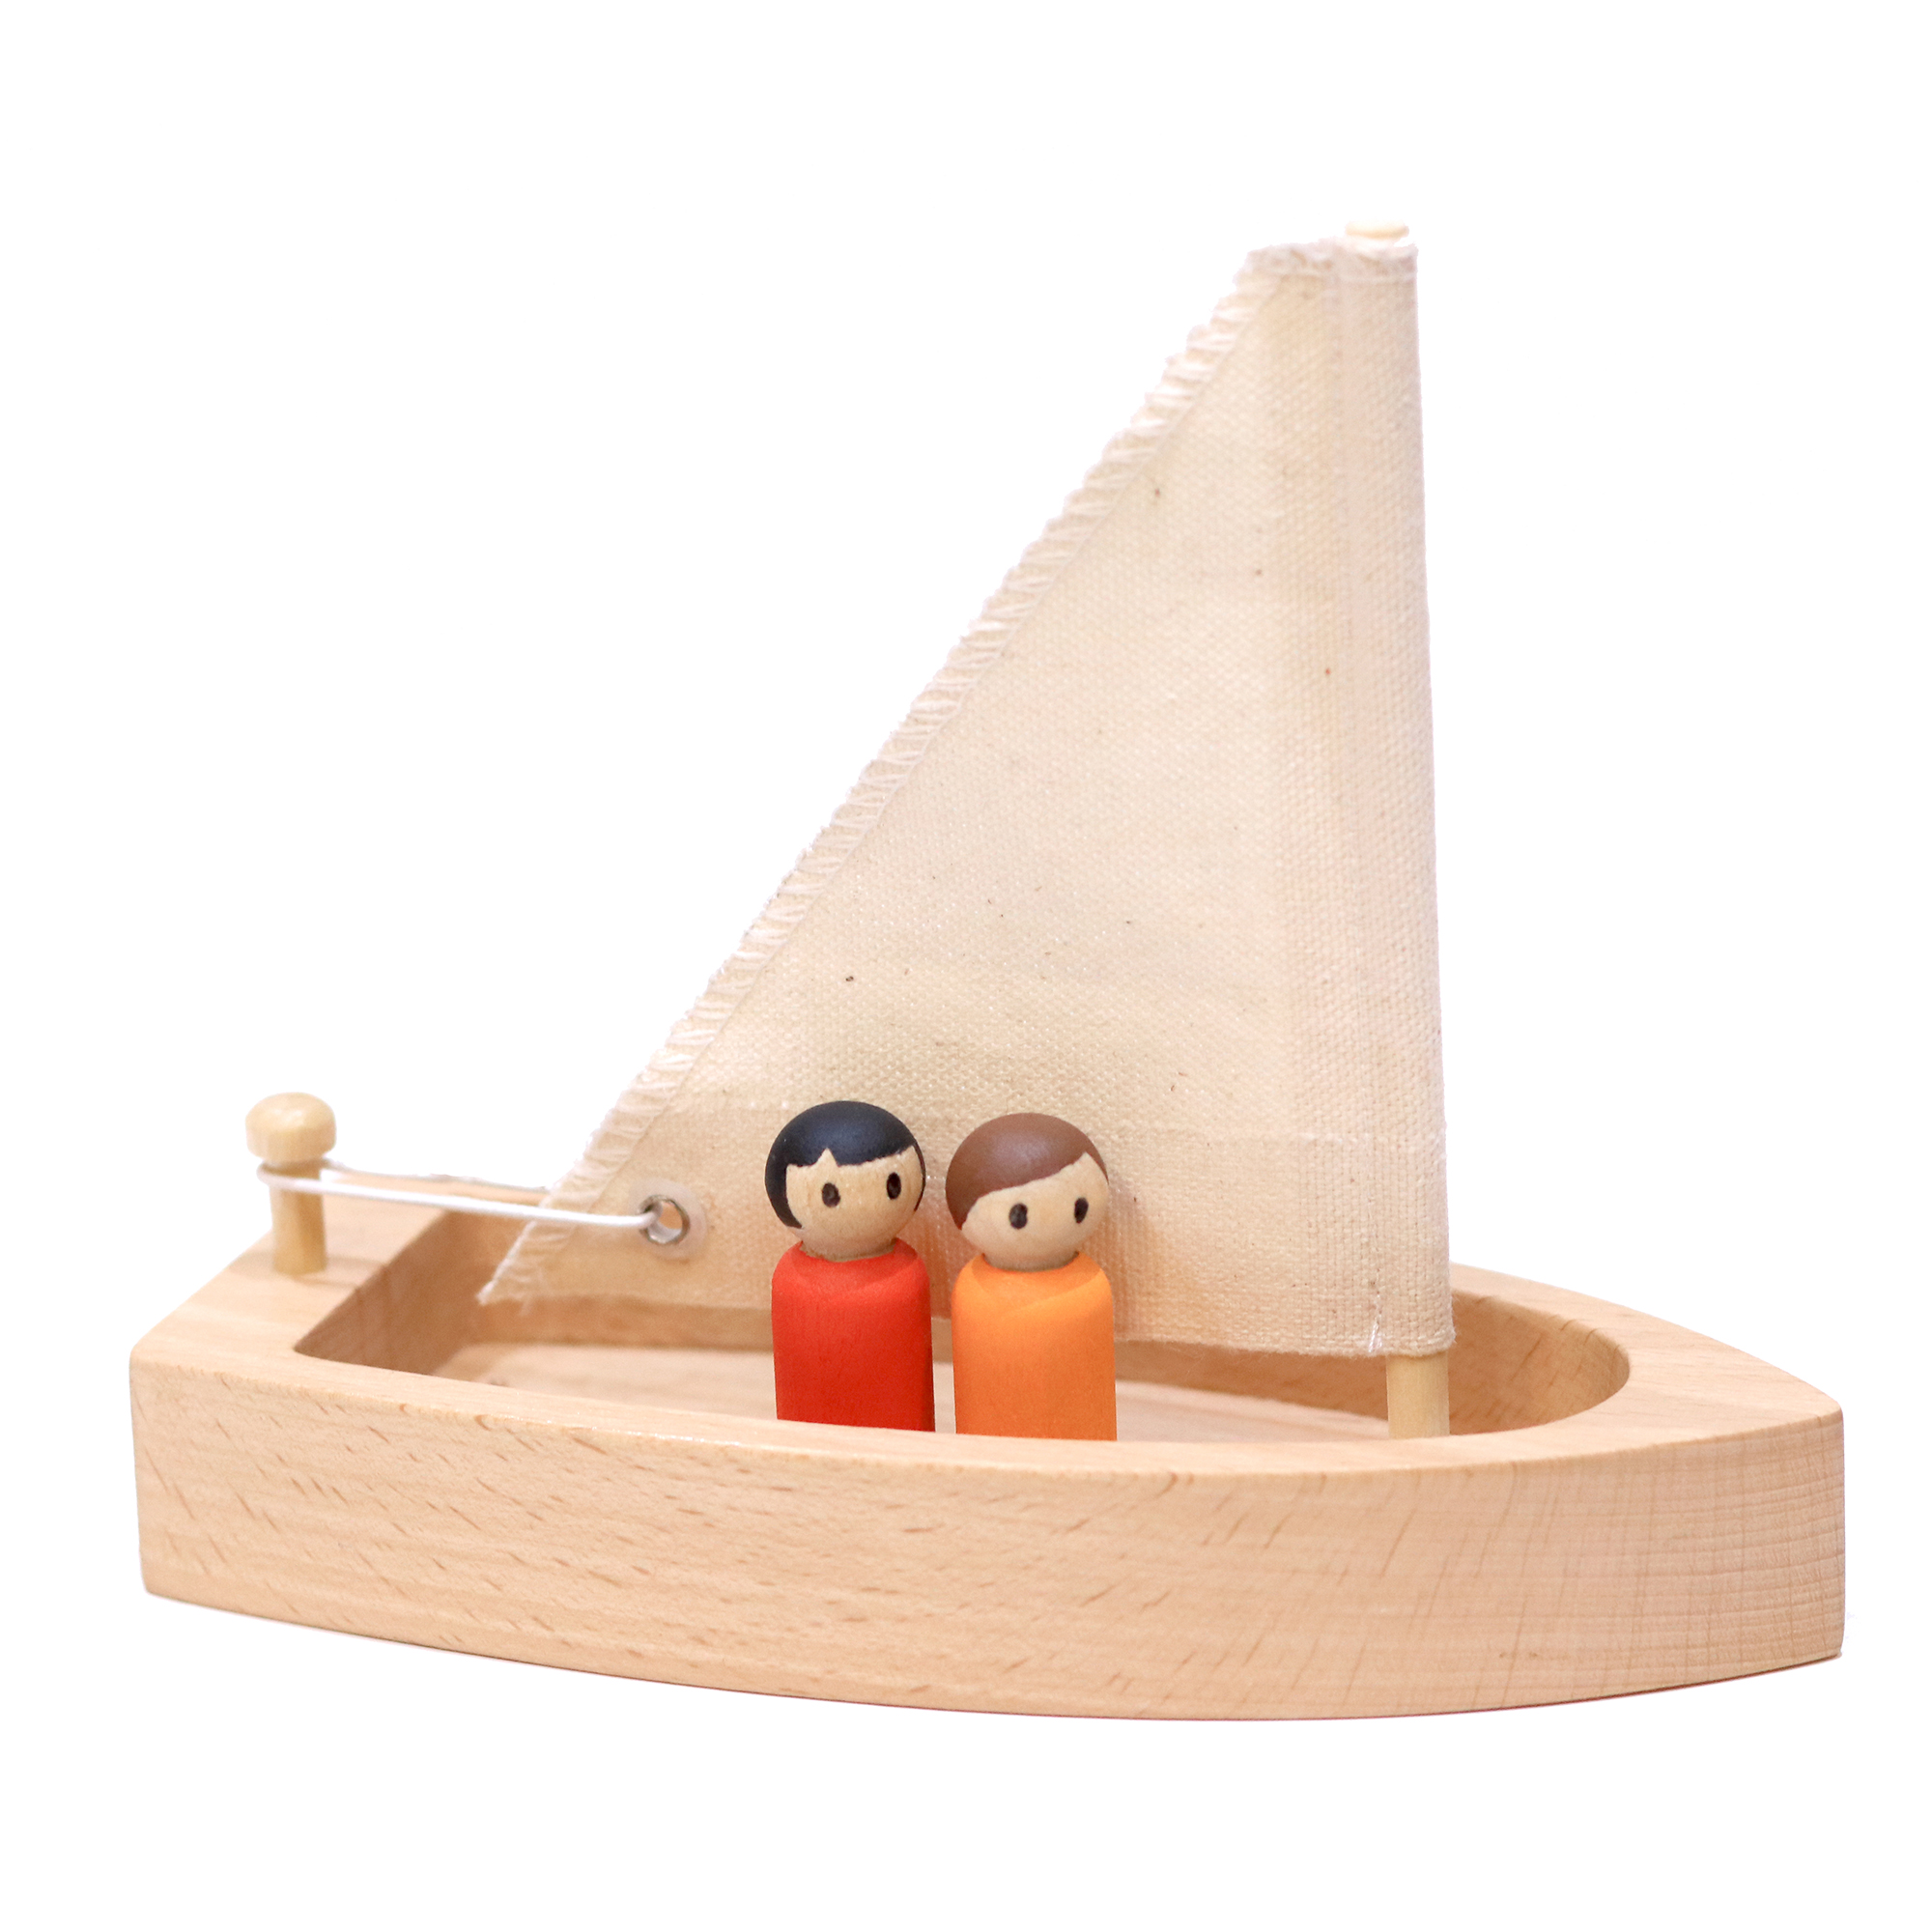 قایق چوبی اسباب بازی مدل Sailing کودکانه